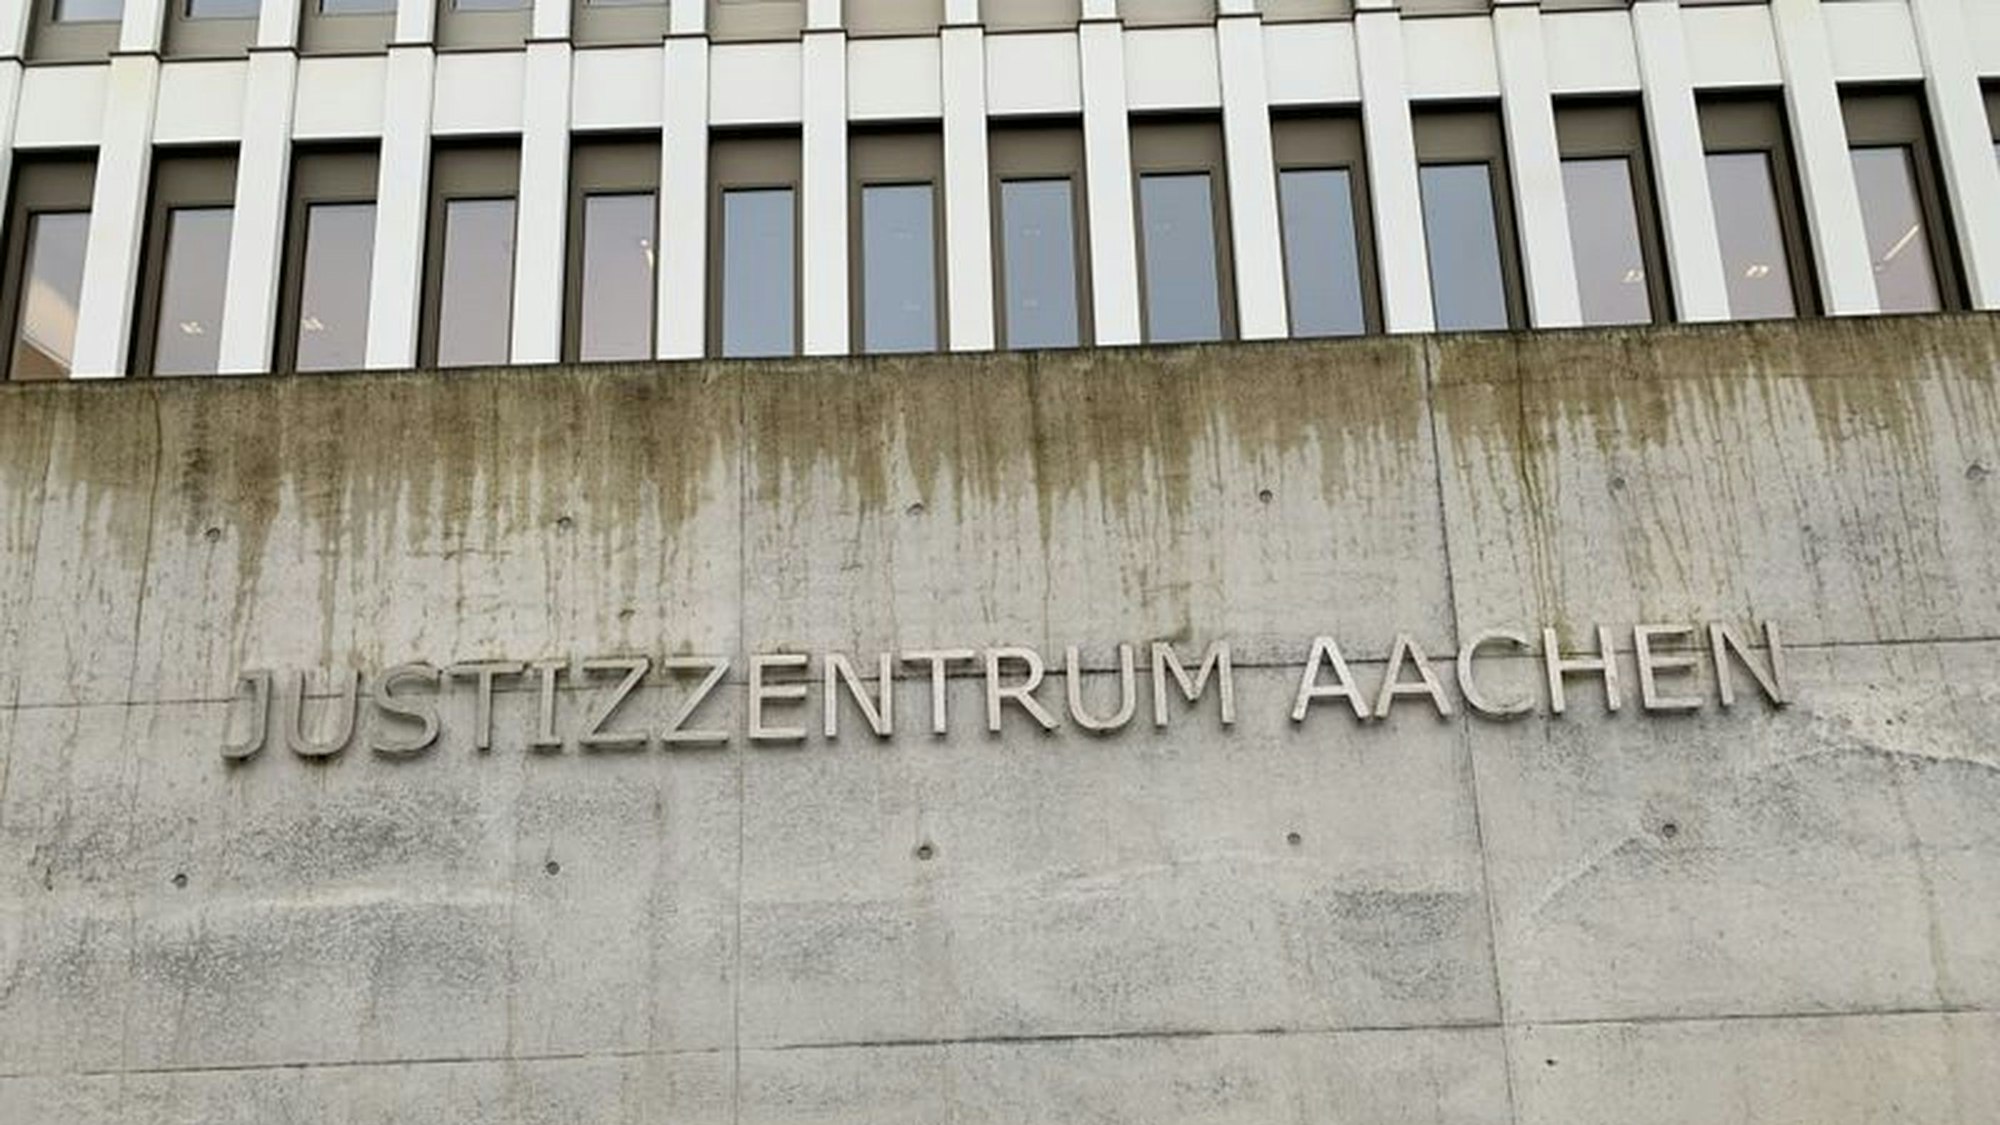 An einer Betonfassade ist der Schriftzug „Justizzentrum Aachen“ angebracht. Darüber sieht man eine Fensterreihe.